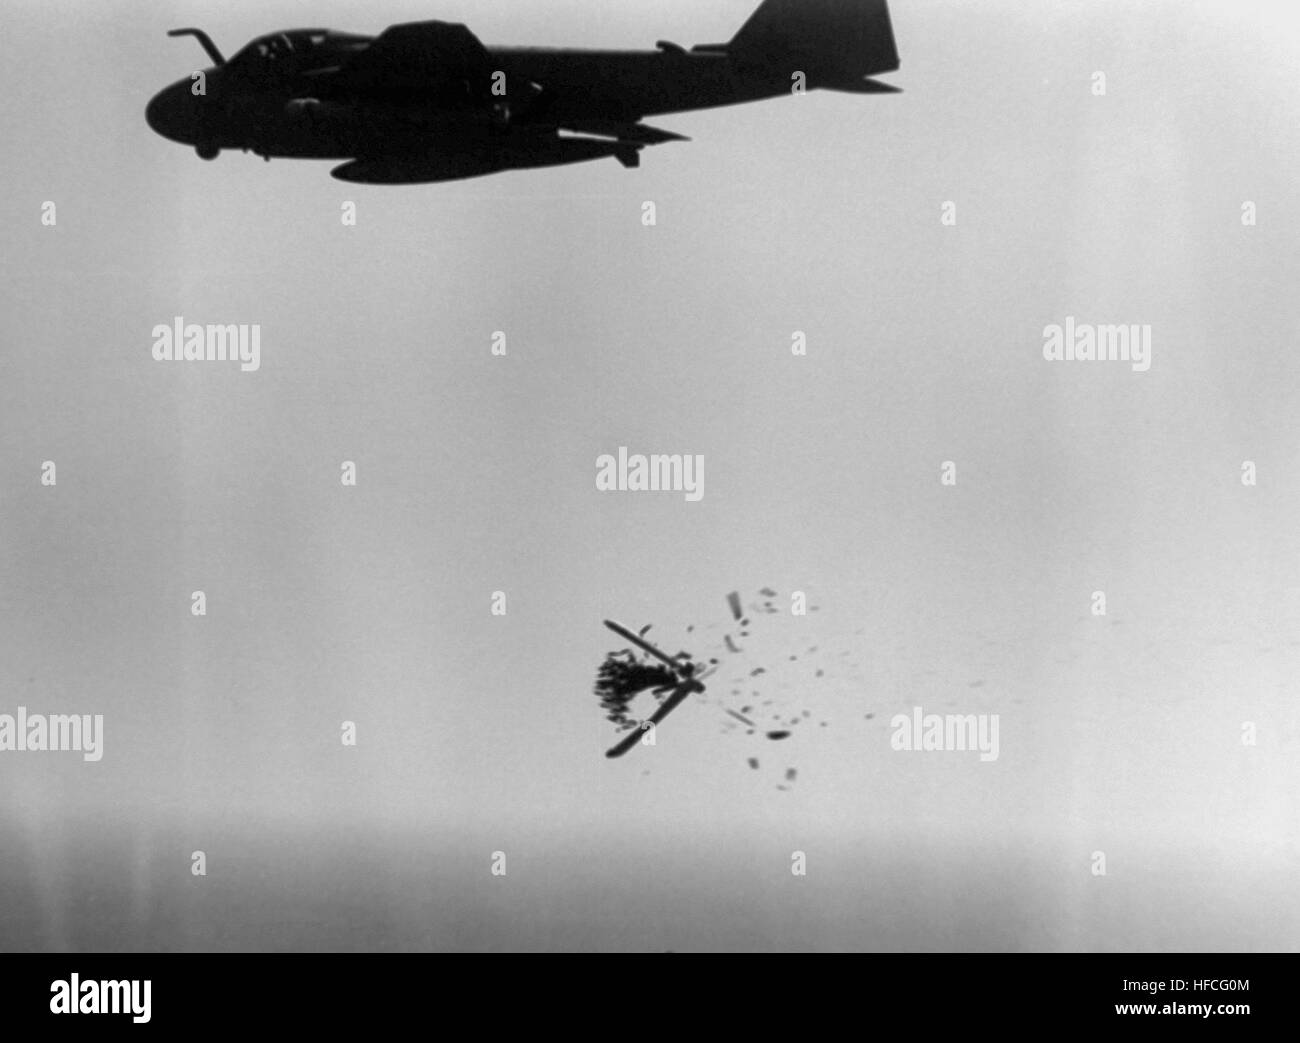 880418-N-ZZ999-006 DEL GOLFO PÉRSICO (18 de abril de 1988) Una CBU-59 Cluster Munition fracturas abiertas para soltar sus bombas tras ser lanzadas desde un A-6E Intruder aviones durante un ataque contra un objetivo iraní. El ataque fue parte de la operación Mantis Religiosa, que se inició después de la fragata de misiles guiados USS Samuel B. Roberts (FFG-58) golpeó una mina iraní el 14 de abril de 1988. (Ee.Uu. Navy photo/liberado) A-6E de la VA-85 cae CBU-59 cluster bomb en destino iraní de 1988 Foto de stock